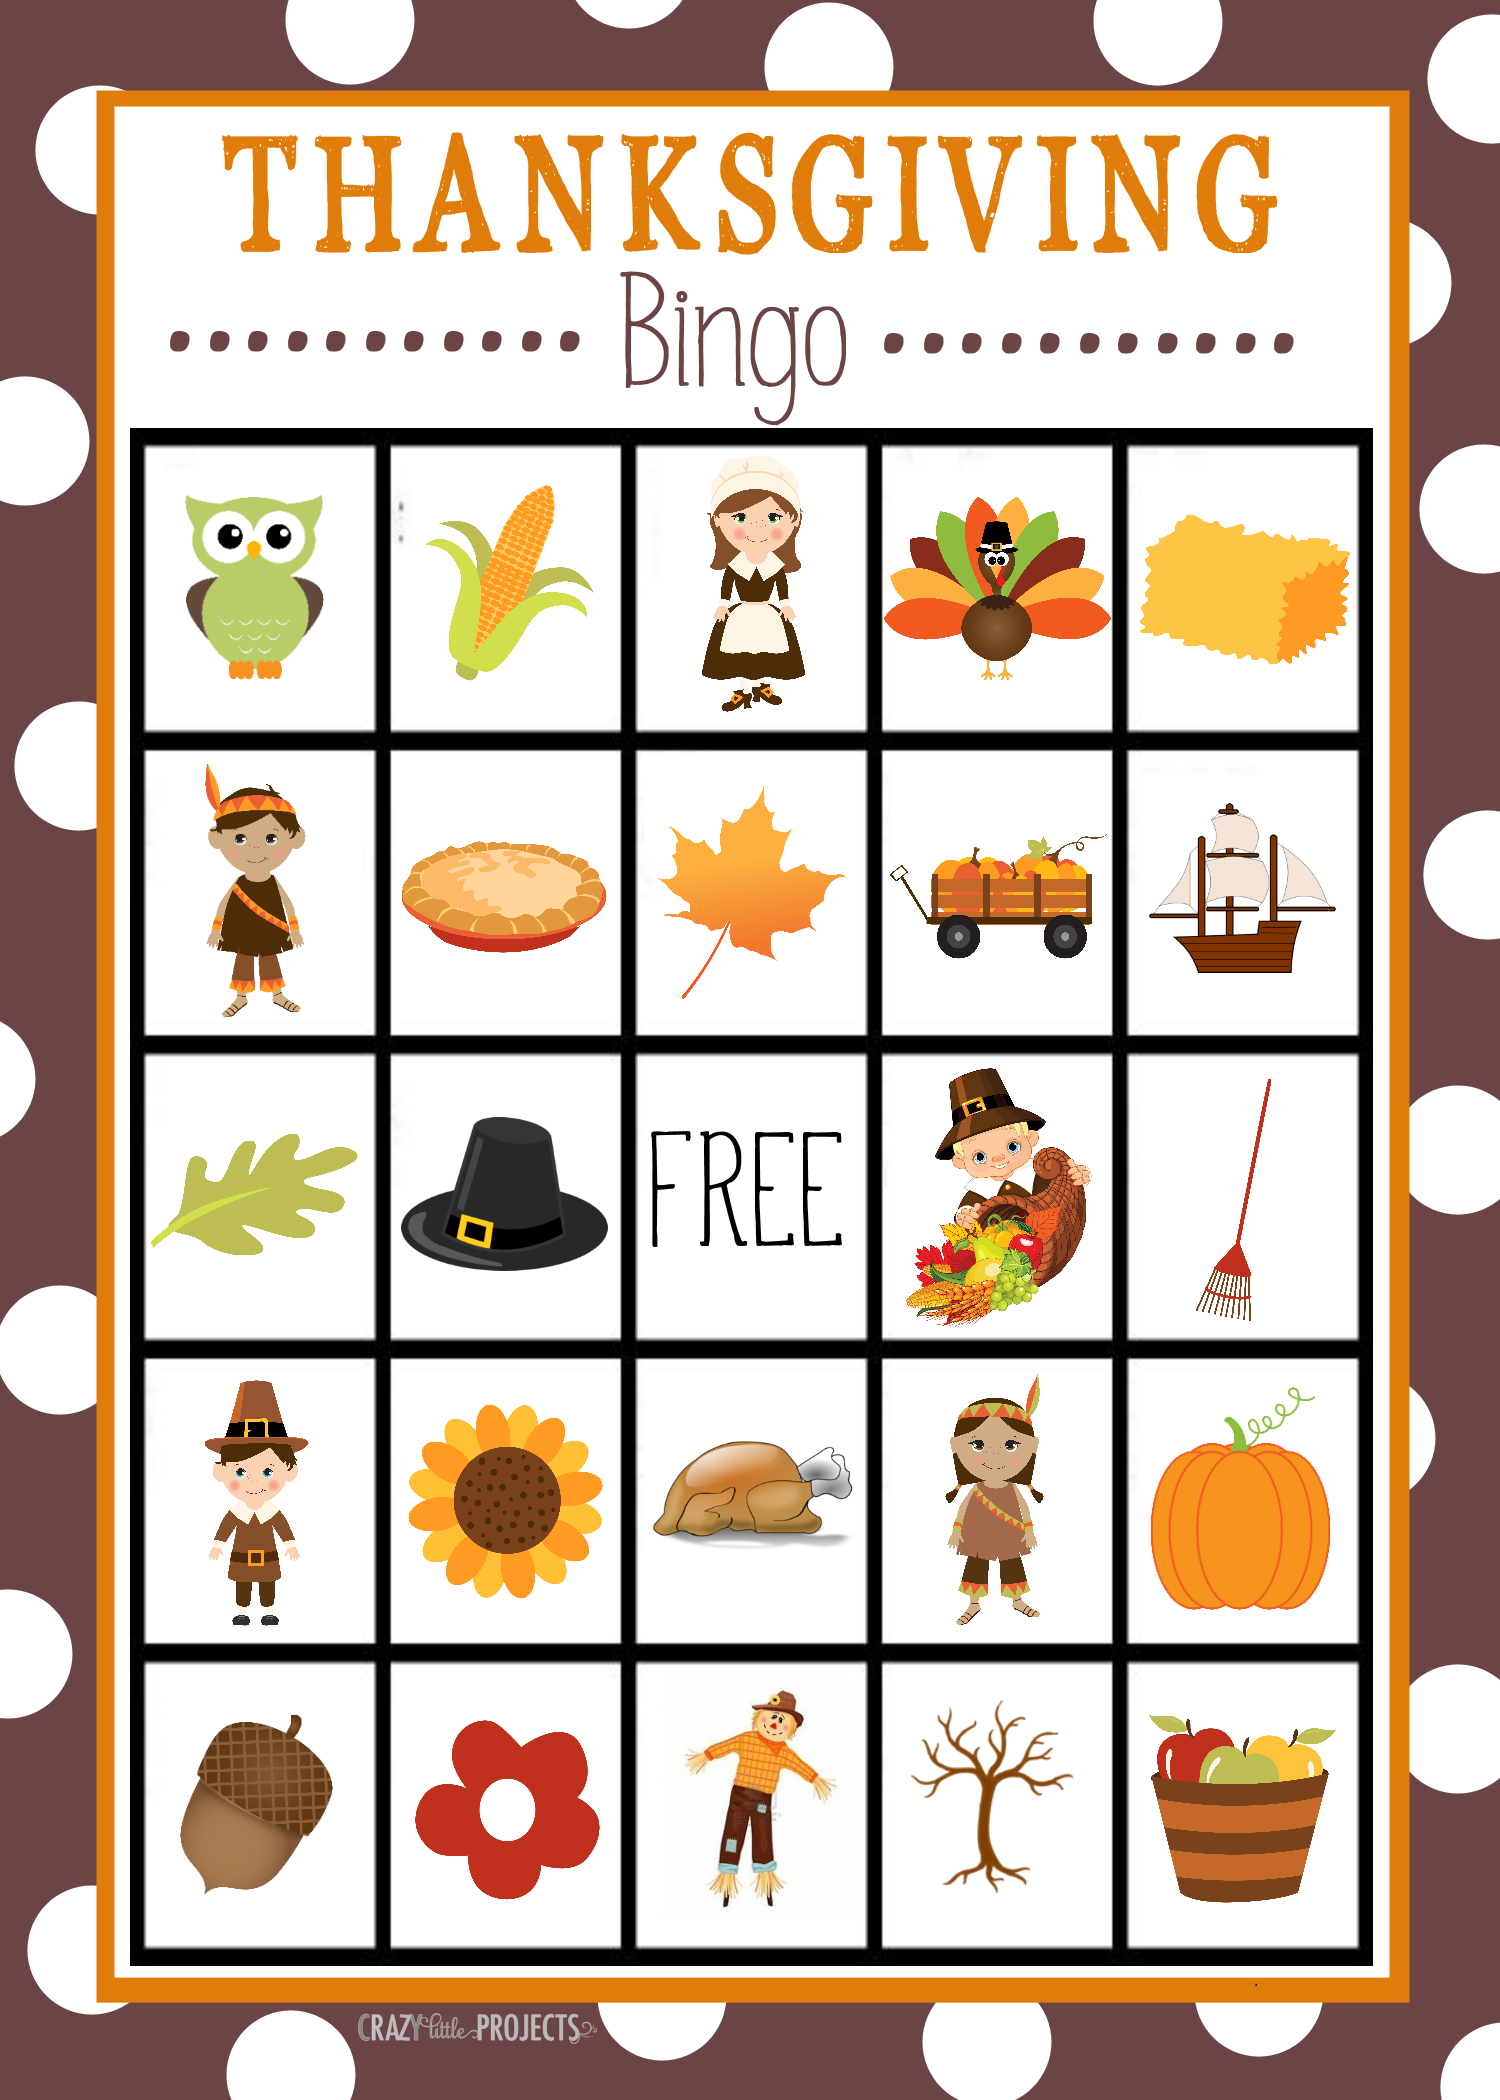 Free Printable Thanksgiving Bingo Game | Craft Time | Pinterest - Thanksgiving Games Printable Free